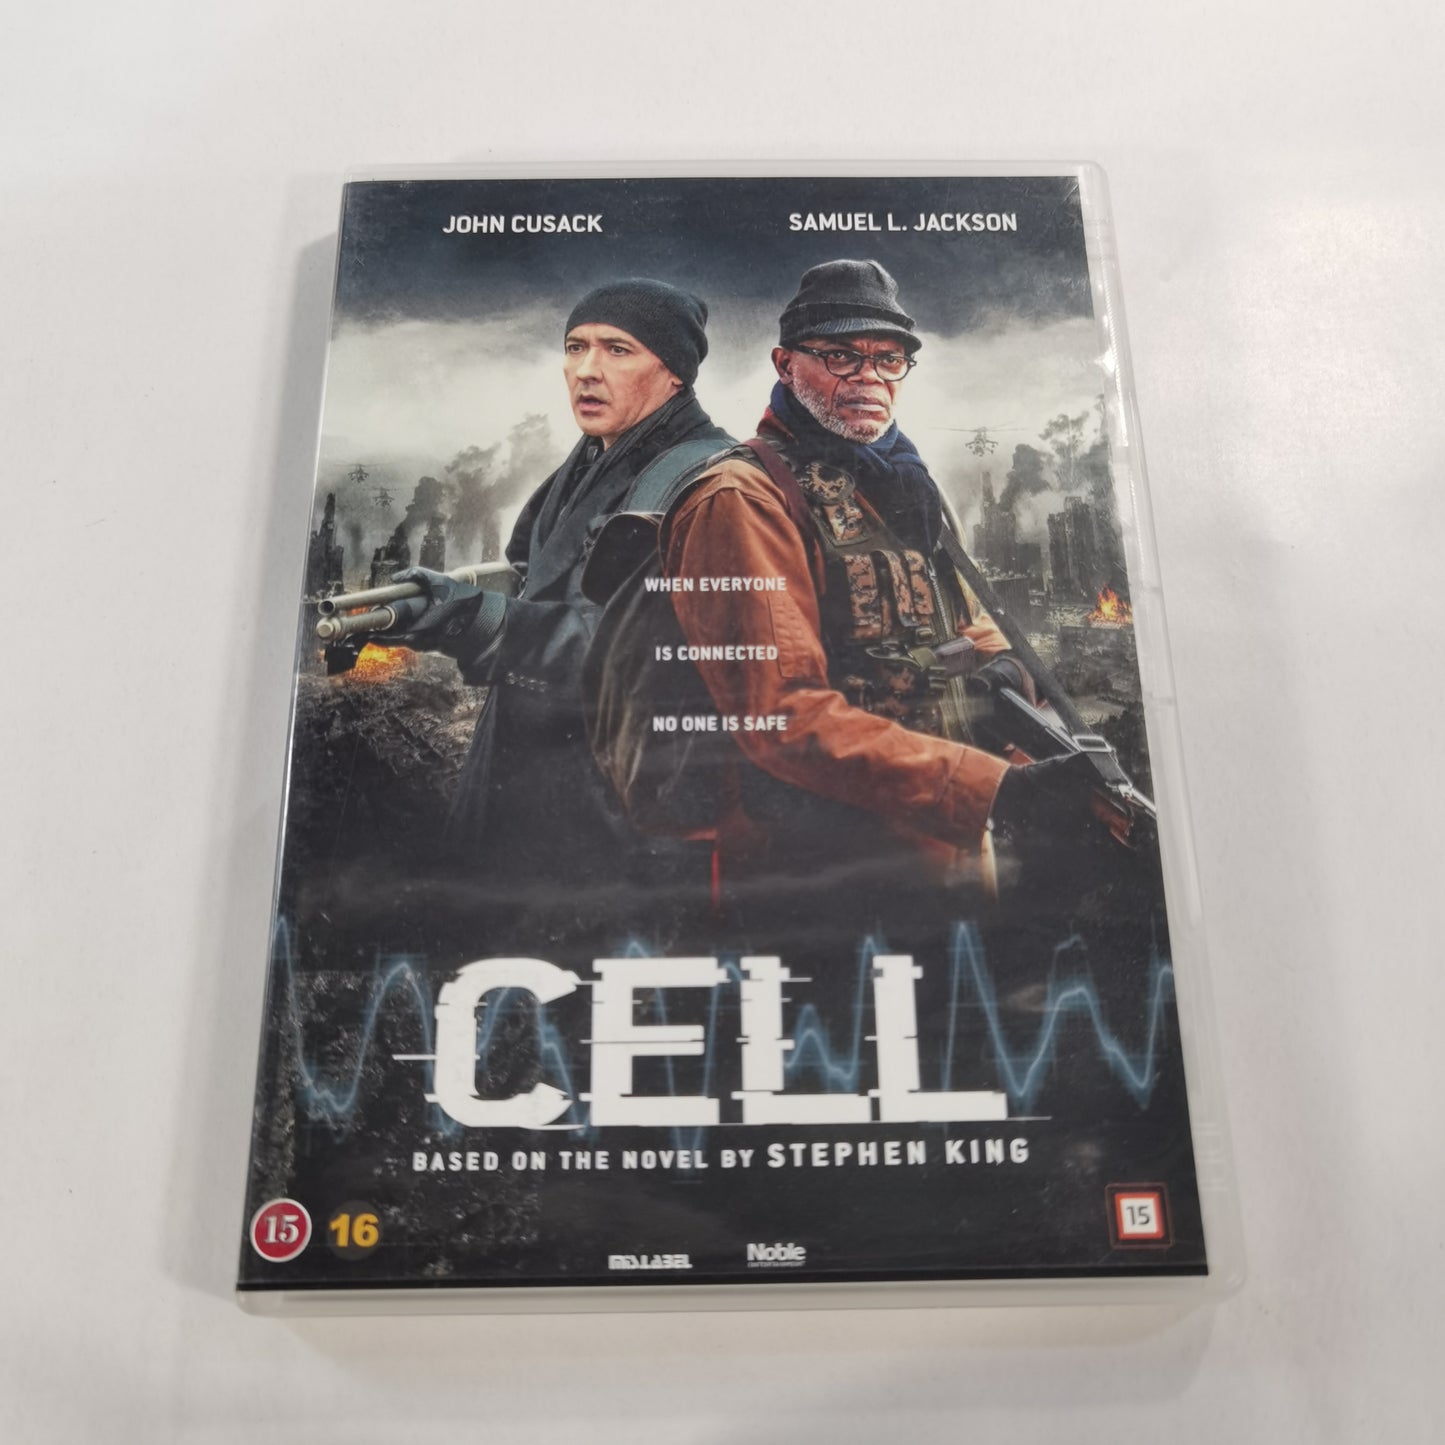 Cell (2016) - DVD SE NO DK FI 2016 RC